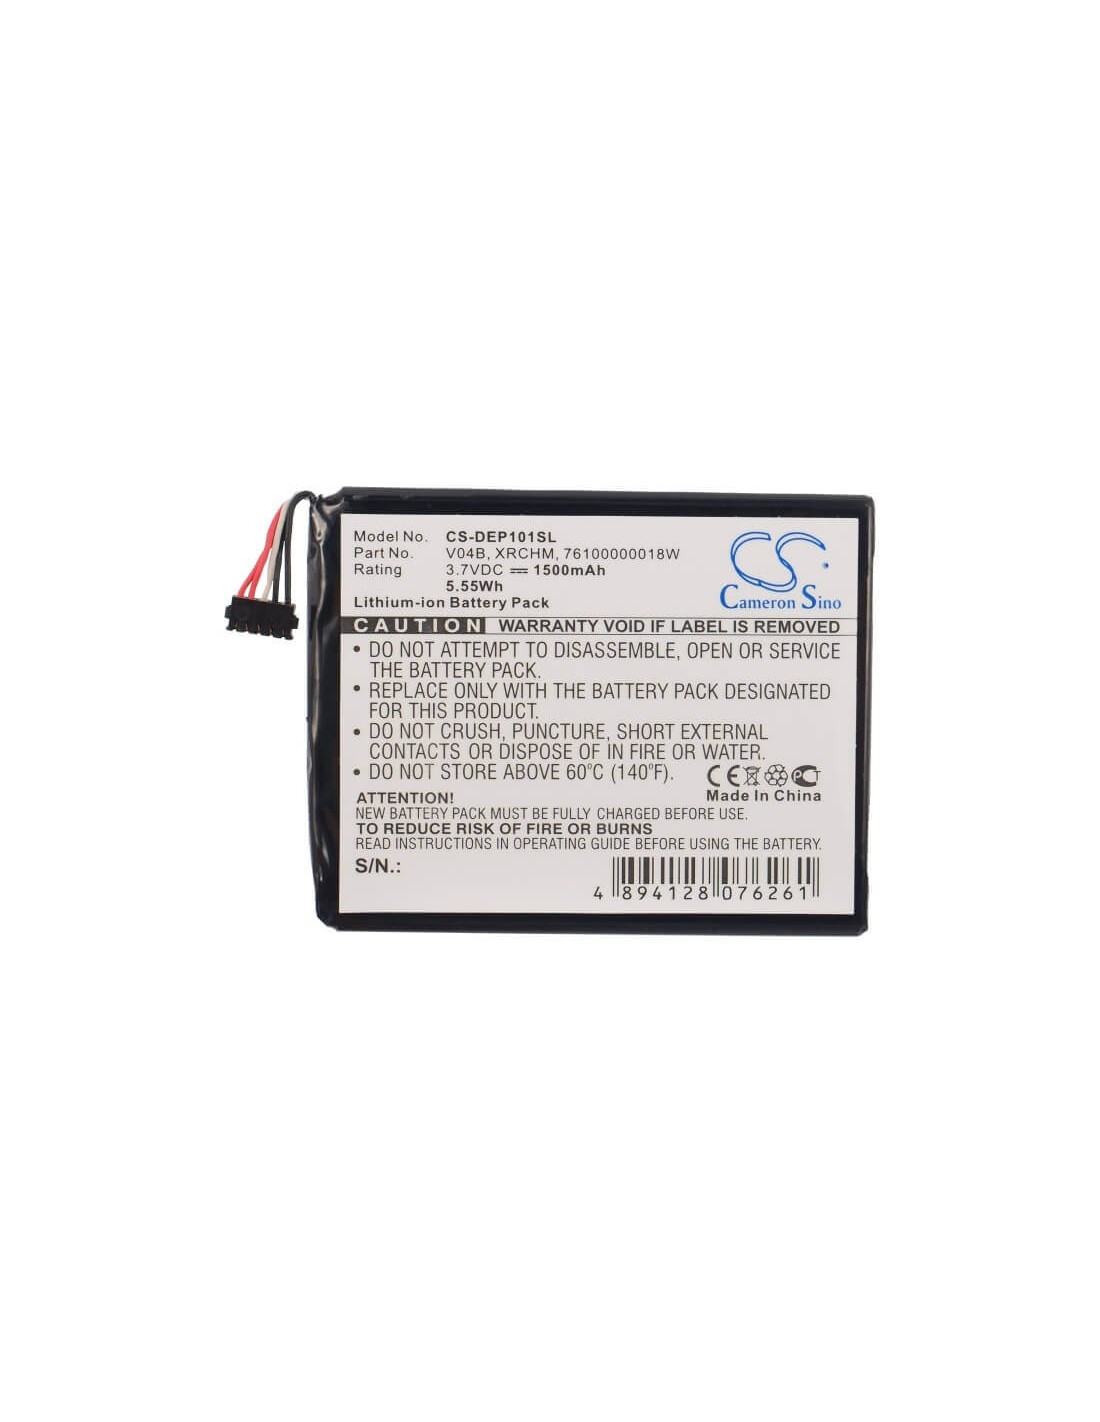 Battery for Dell Streak Pro, 101dl, D43 3.7V, 1500mAh - 5.55Wh